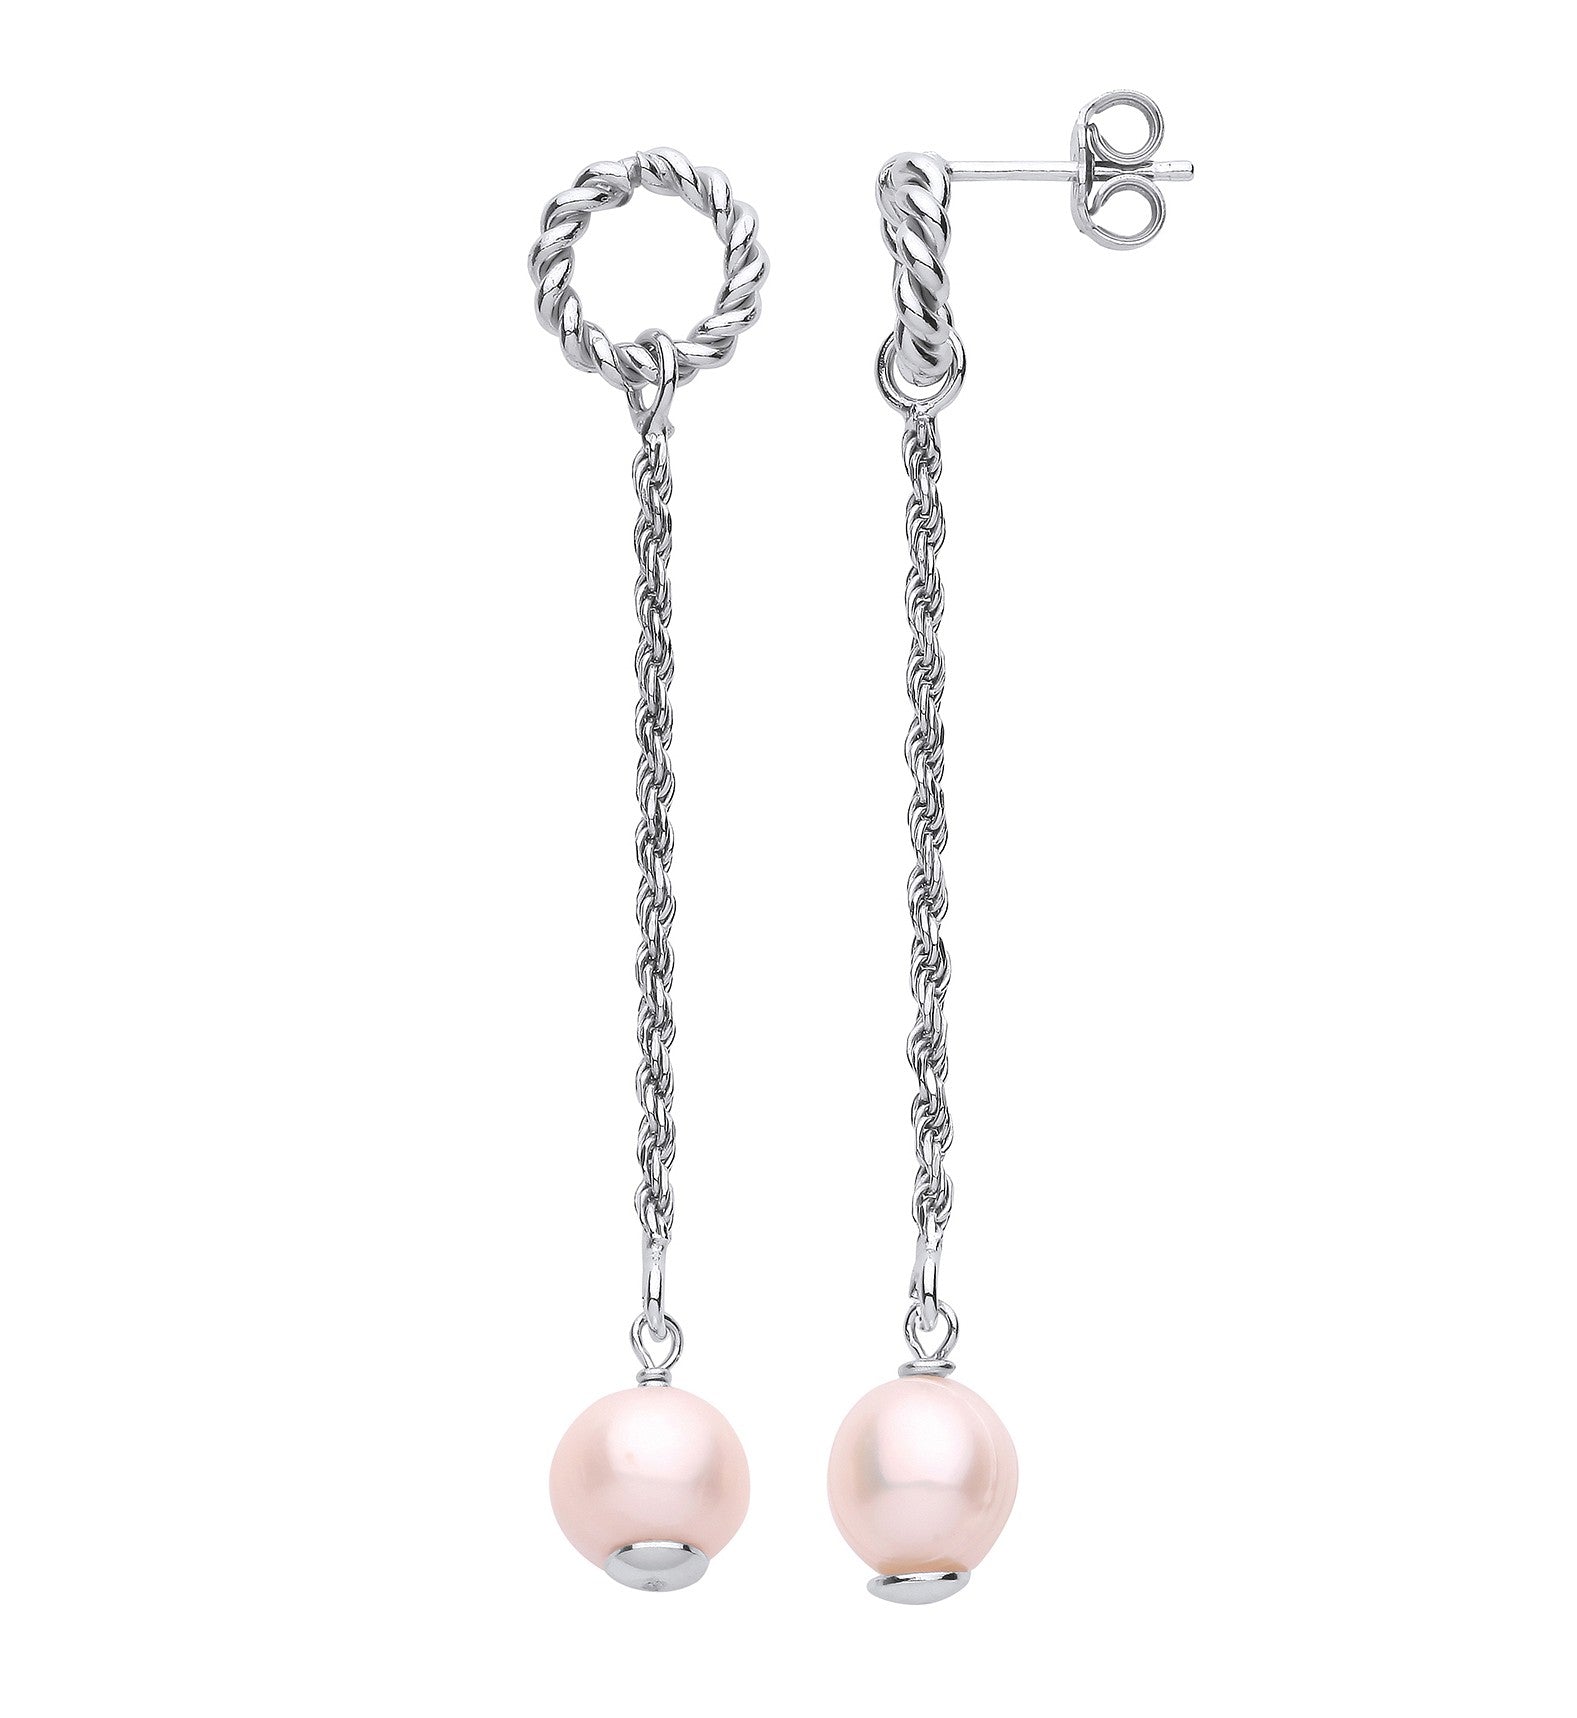 Silver W/Pearl Drop Earrings